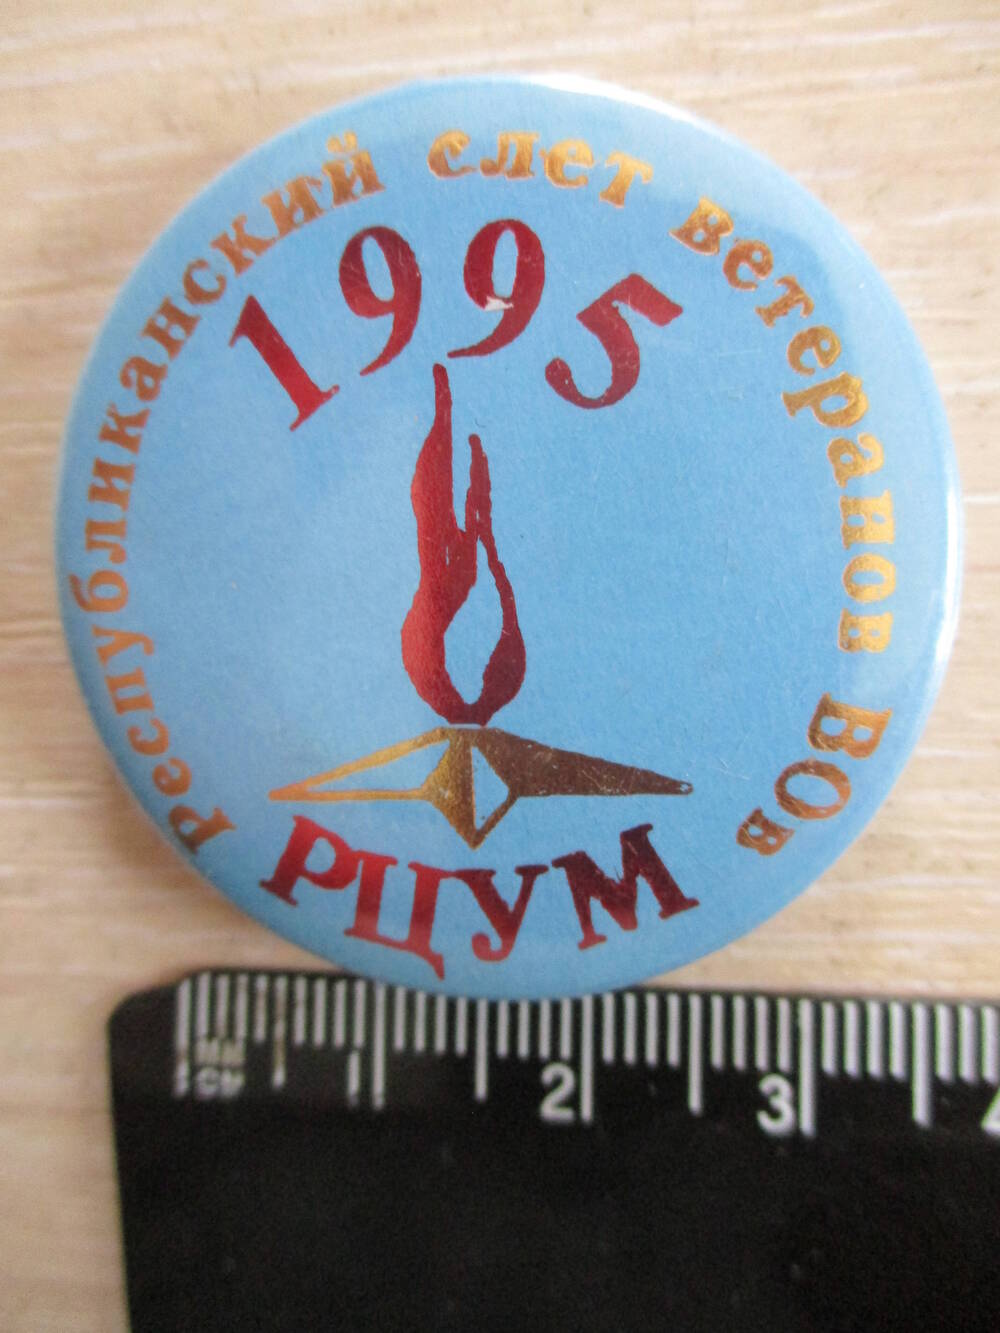 Значок нагрудниый участника Республиканского слета ветеранов Великой Отечественной войны в Республиканском центре учащейся молодежи в г. Ижевск в 1995 году.